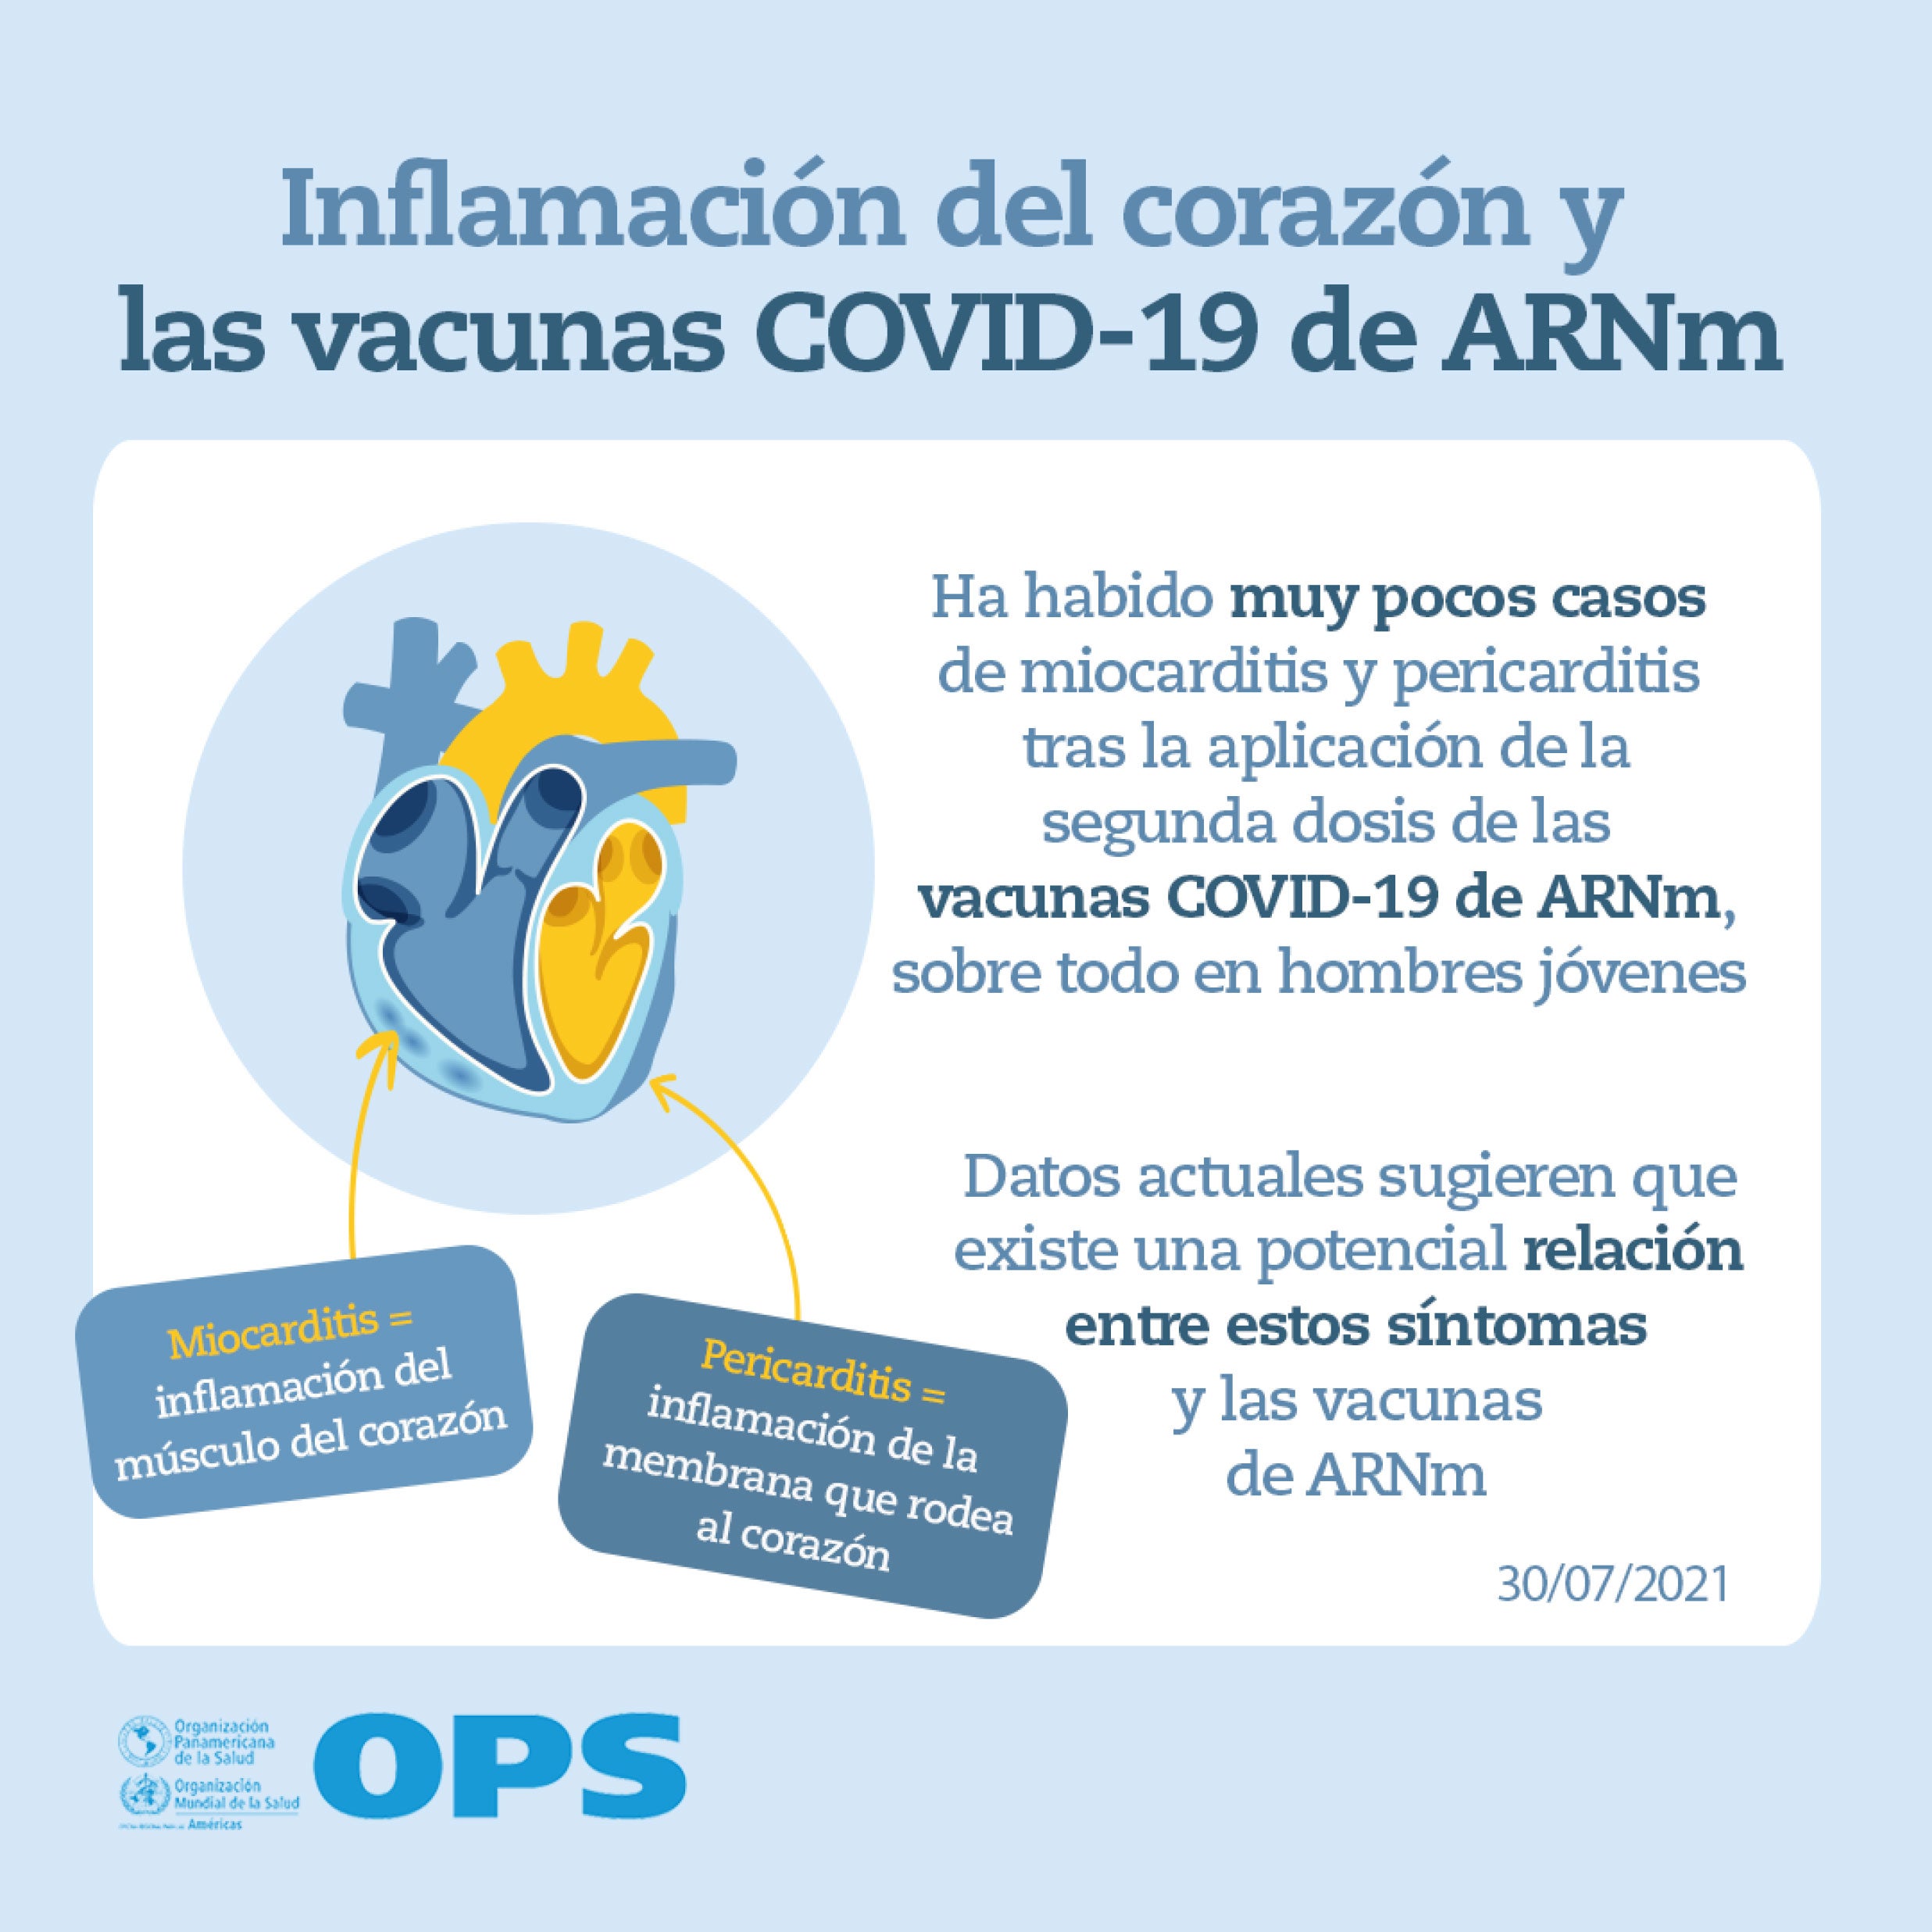 Inflamación del corazón y vacunas COVID-19: Materiales